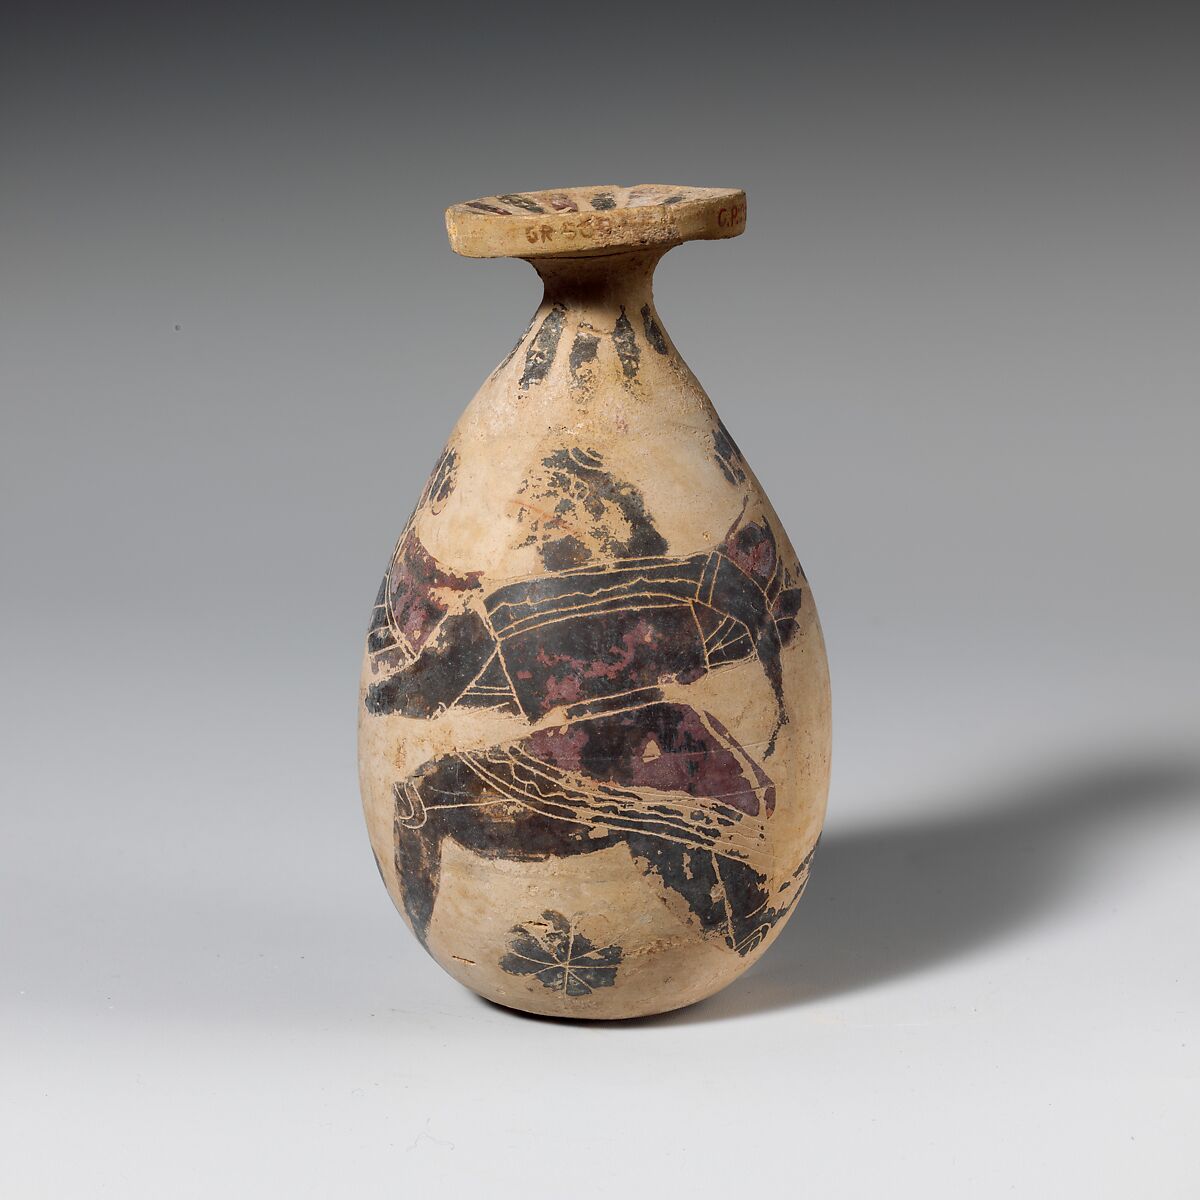 Terracotta alabastron (perfume vase), Terracotta, Greek, Corinthian 